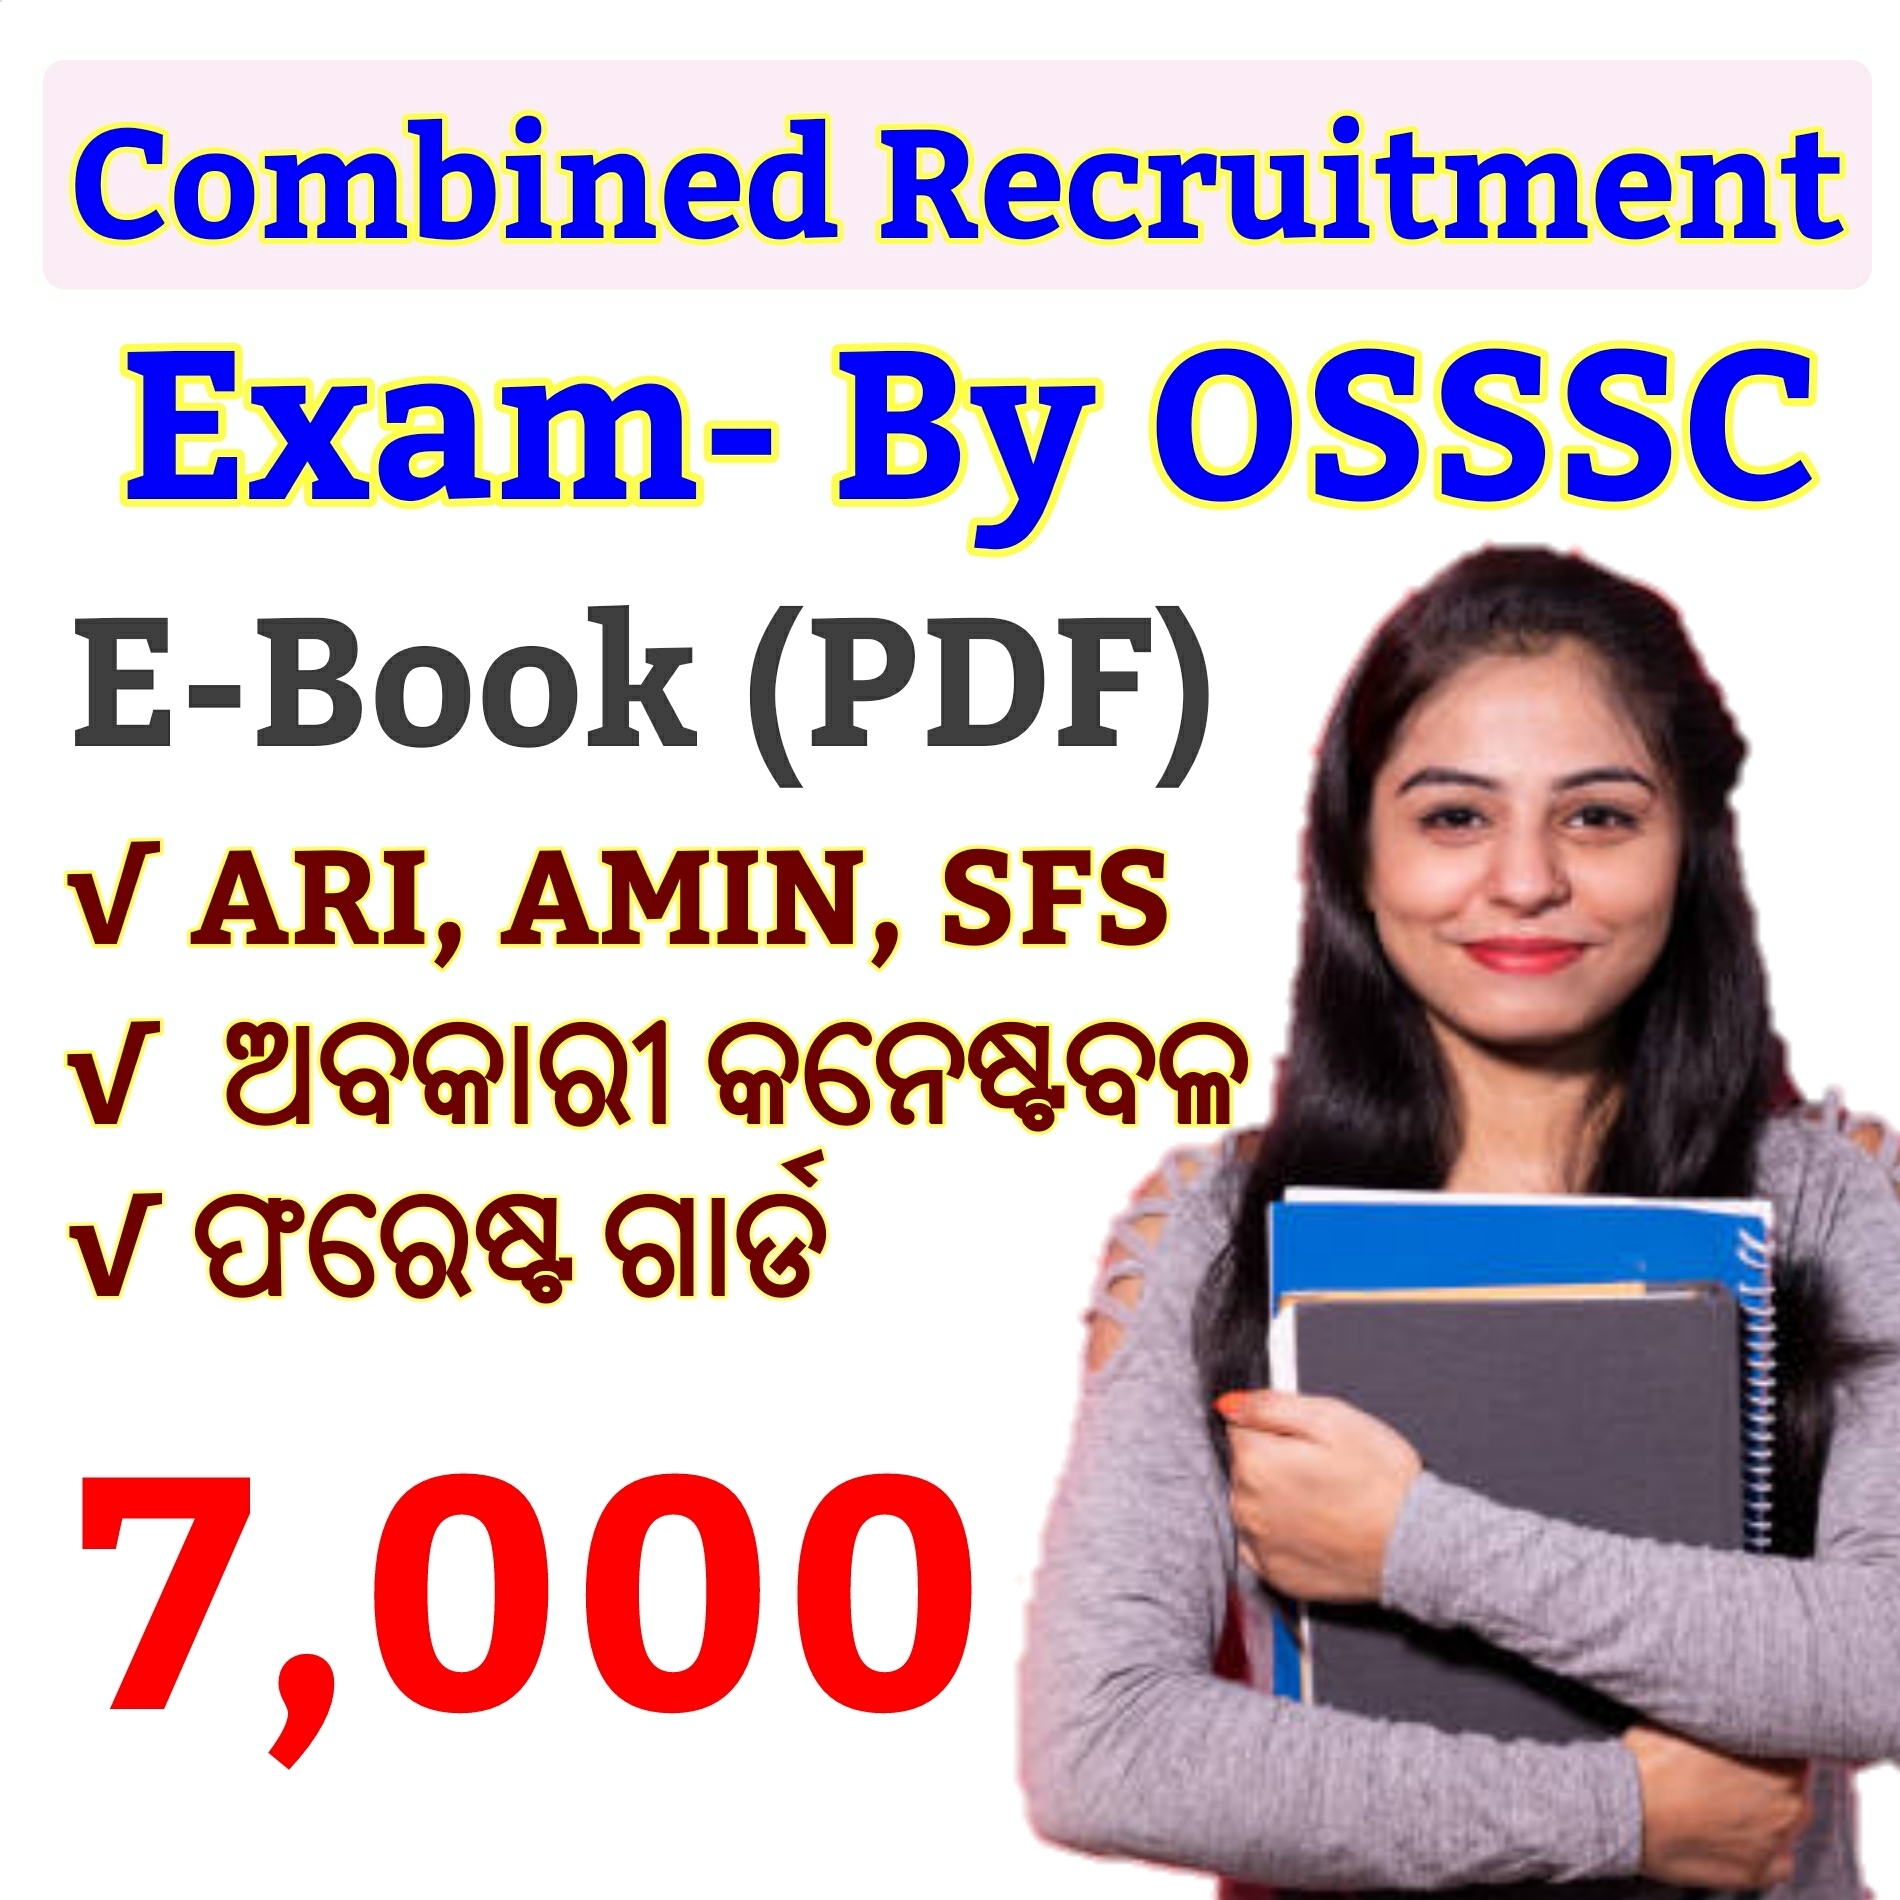 OSSSC Combined Recruitment Exam Details 2021